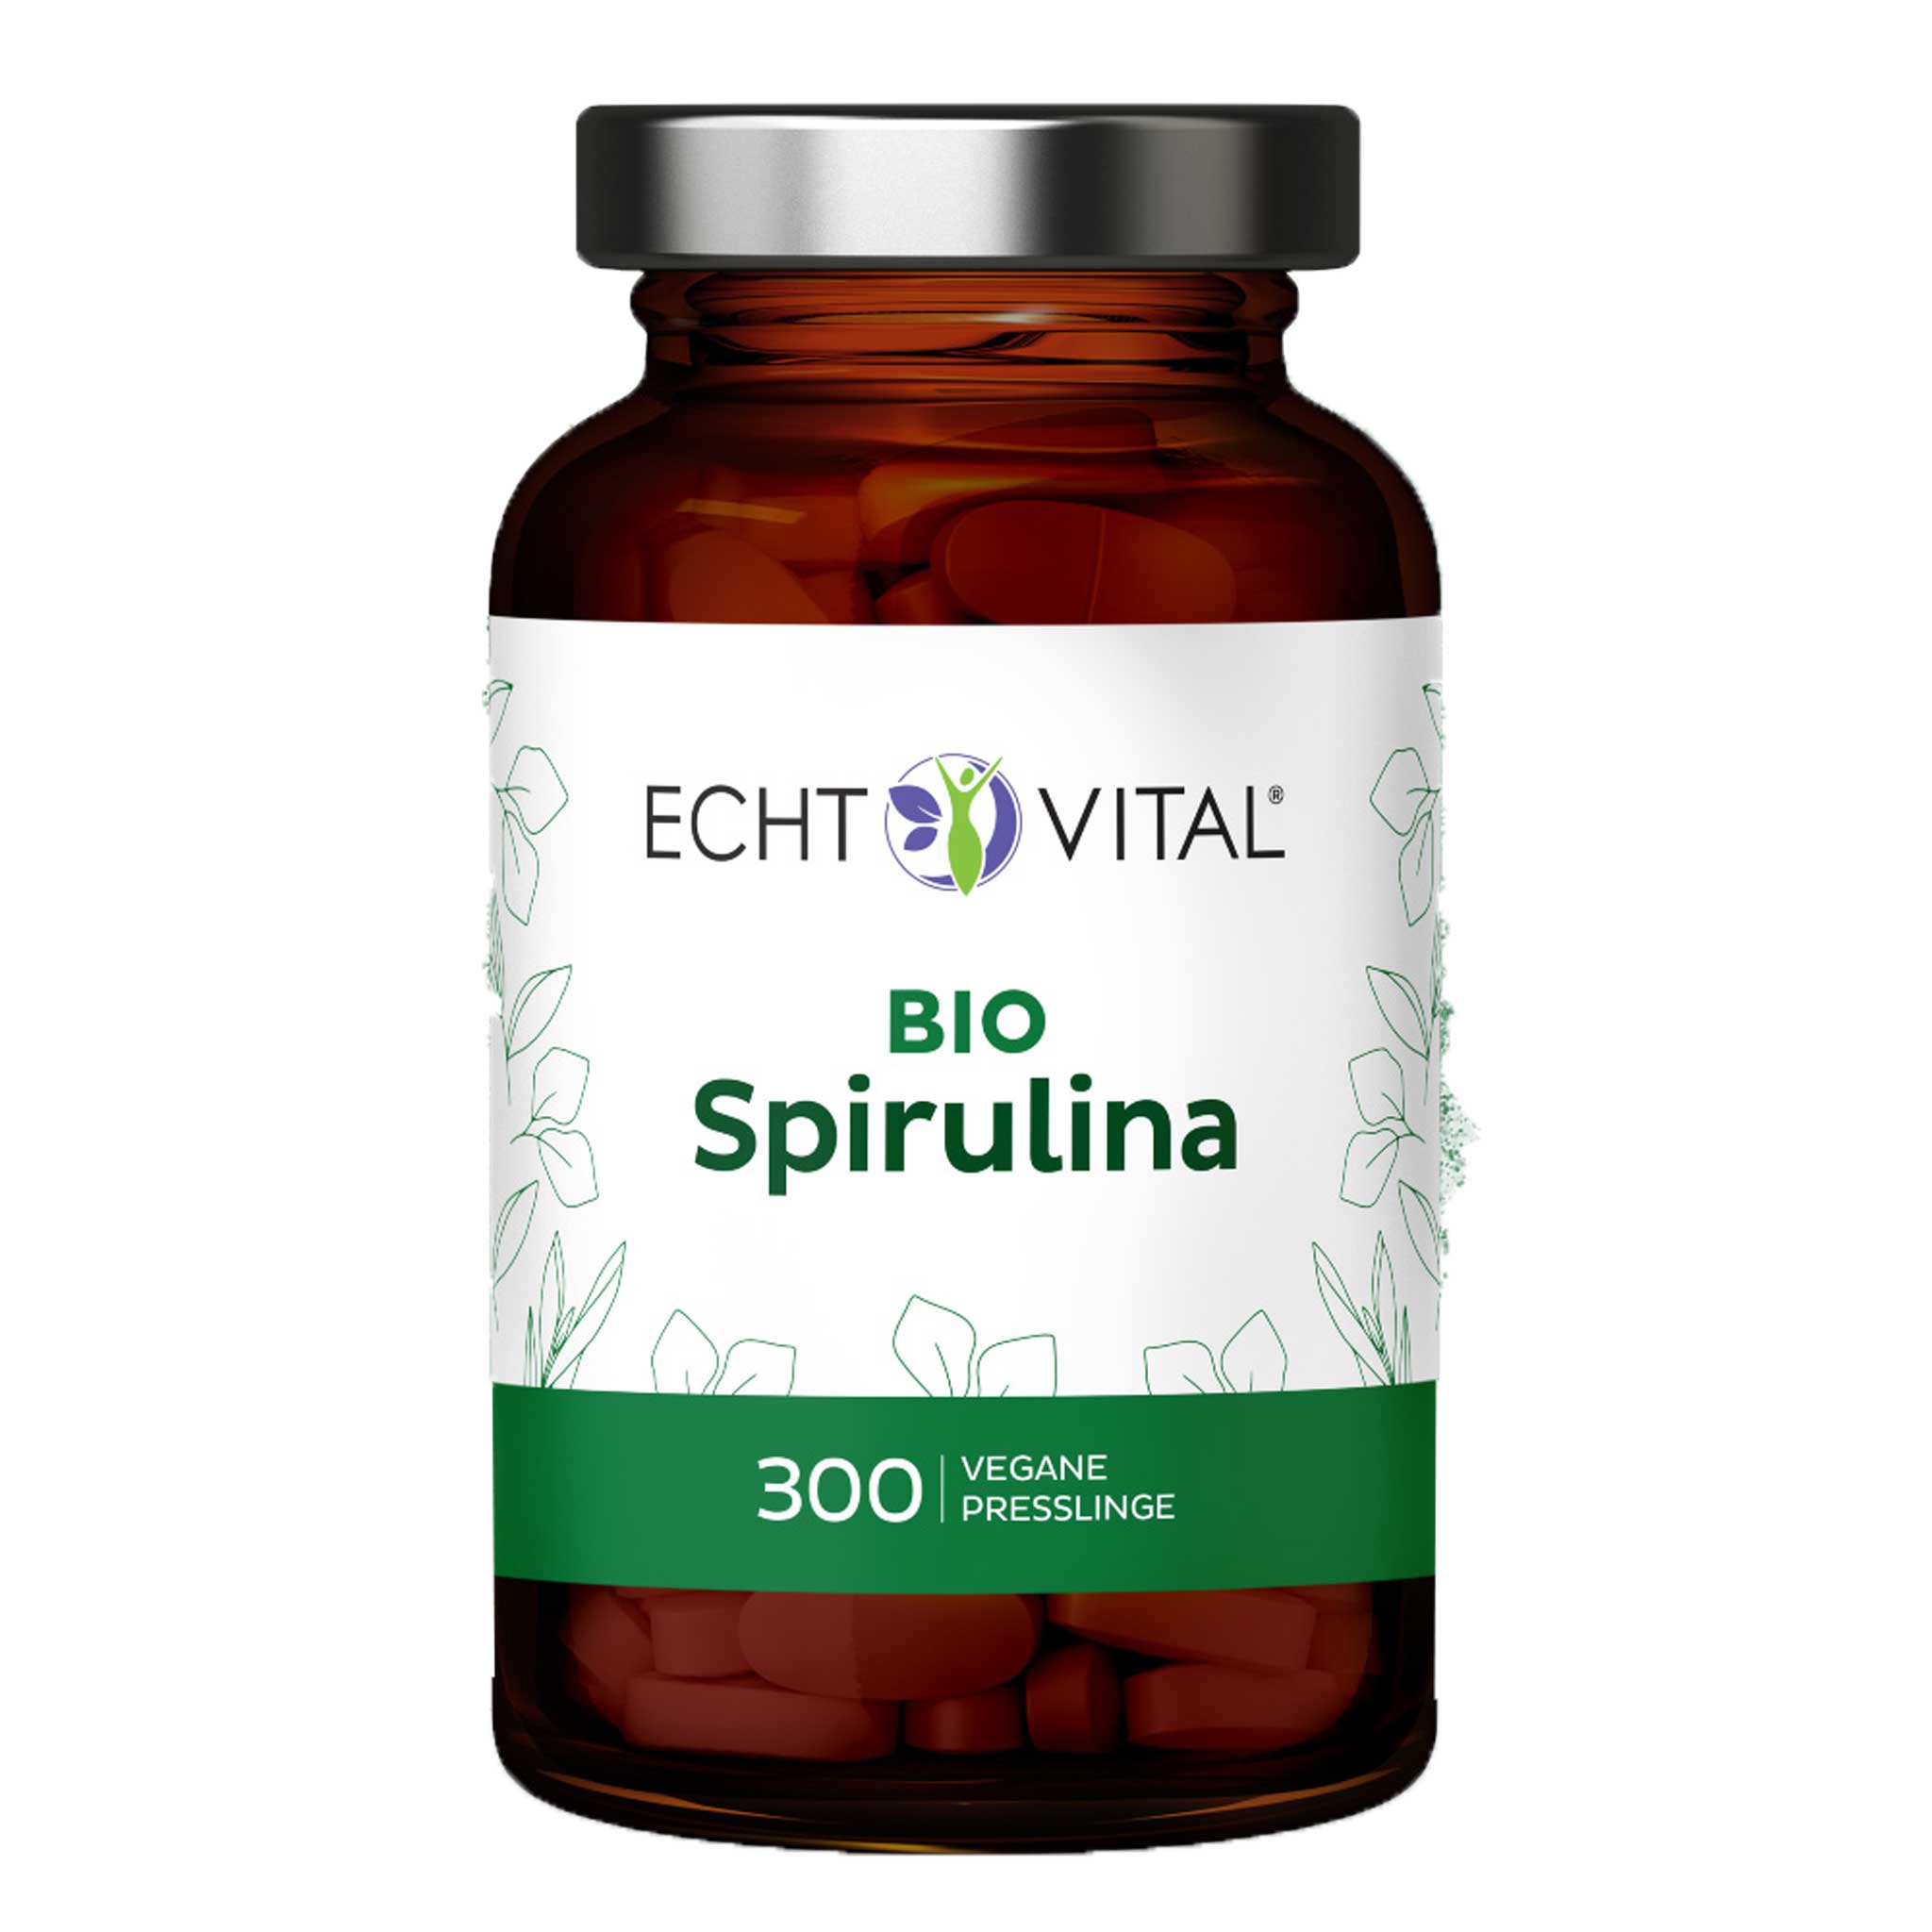 Bio Spirulina von Echt Vital beinhaltet 300 vegane Presslinge 